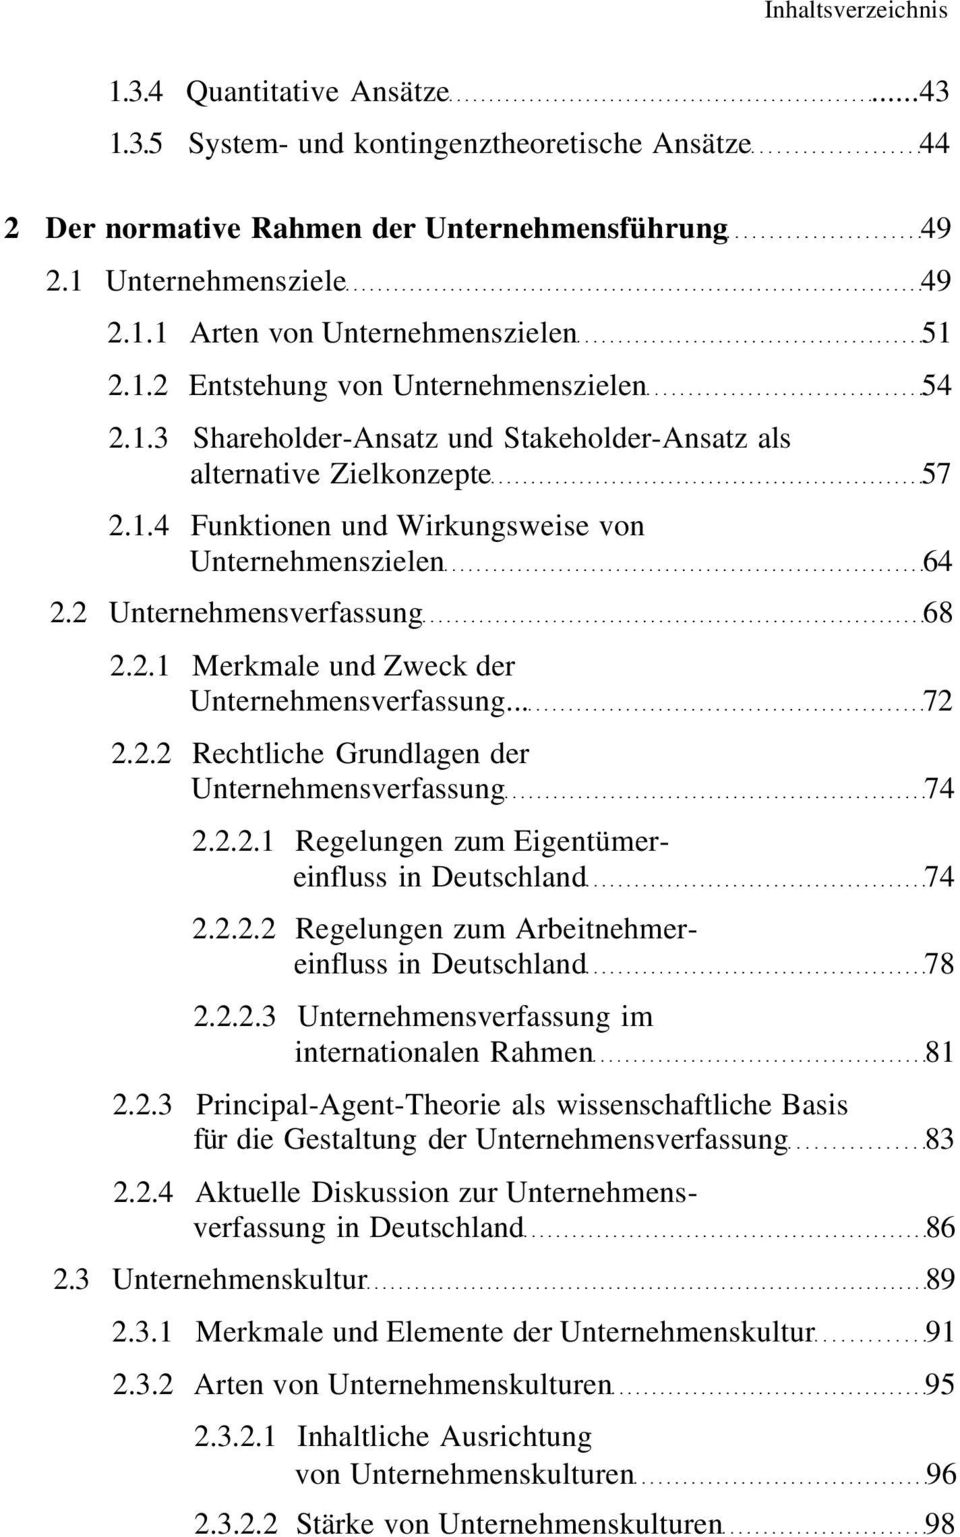 2 Unternehmensverfassung 68 2.2.1 Merkmale und Zweck der Unternehmensverfassung... 72 2.2.2 Rechtliche Grundlagen der Unternehmensverfassung 74 2.2.2.1 Regelungen zum Eigentümereinfluss in Deutschland 74 2.